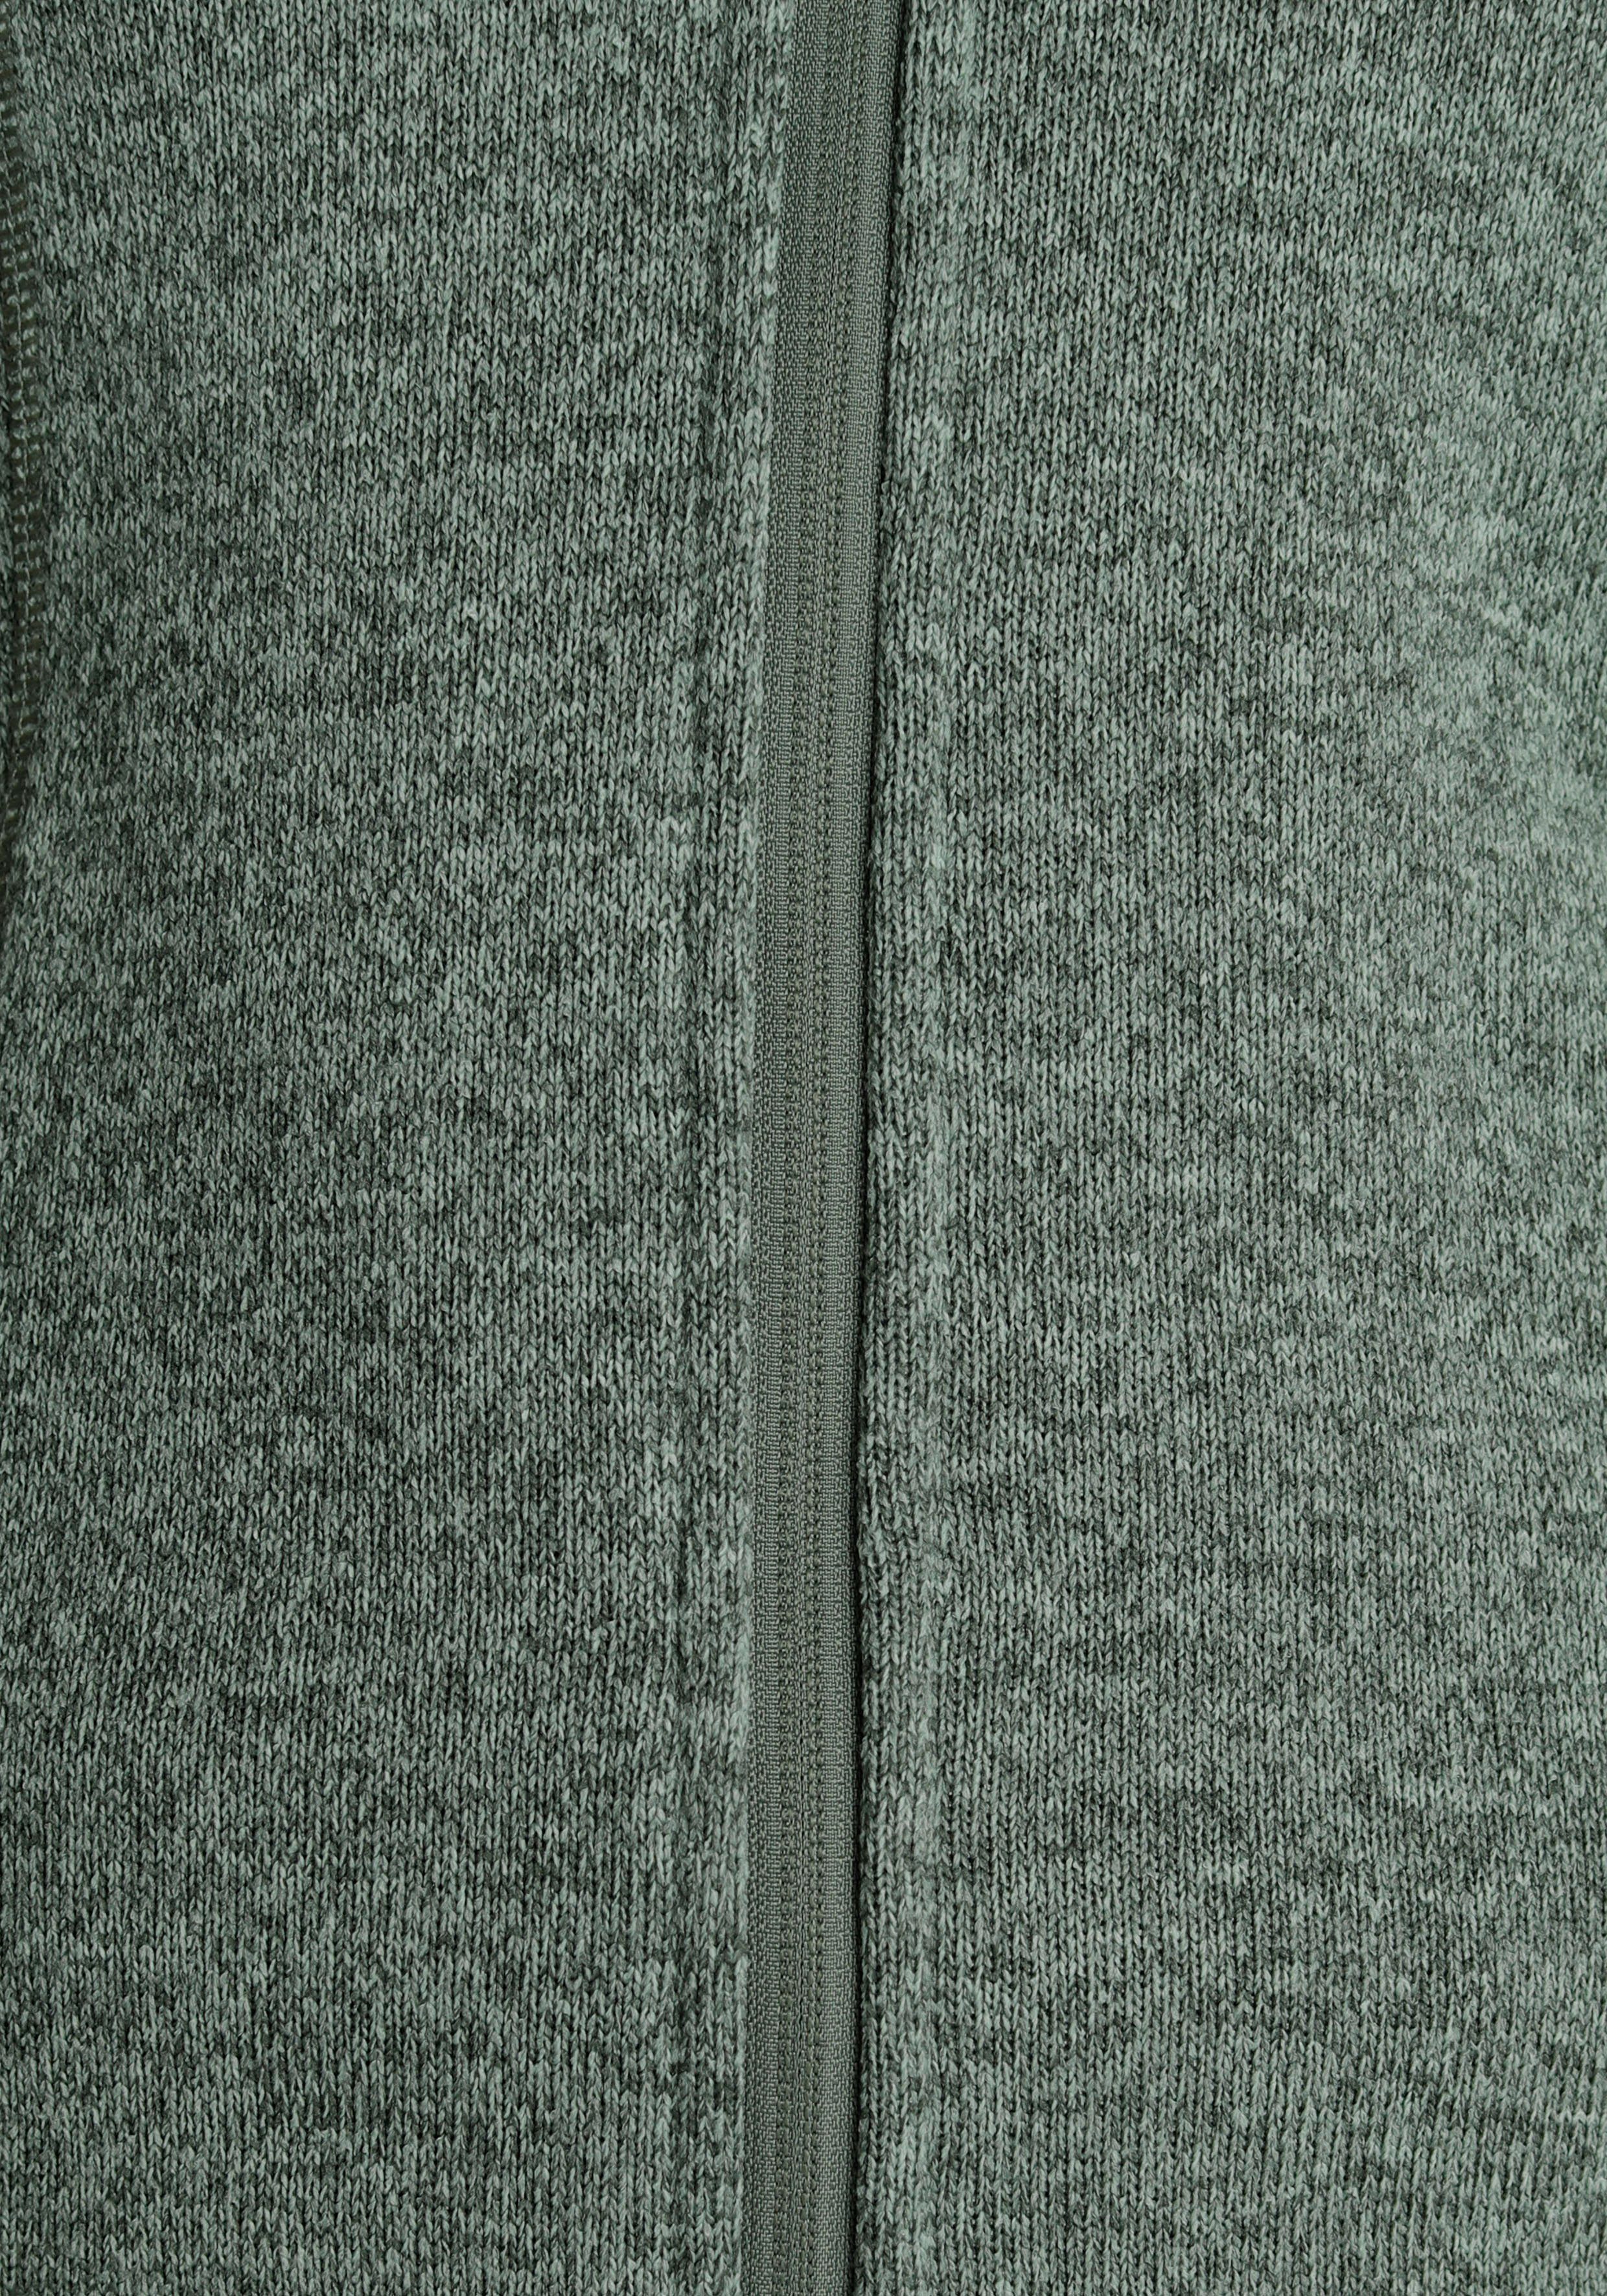 Polarino gefütterter salbeigrün Jersey mit Strickfleecejacke Kapuze